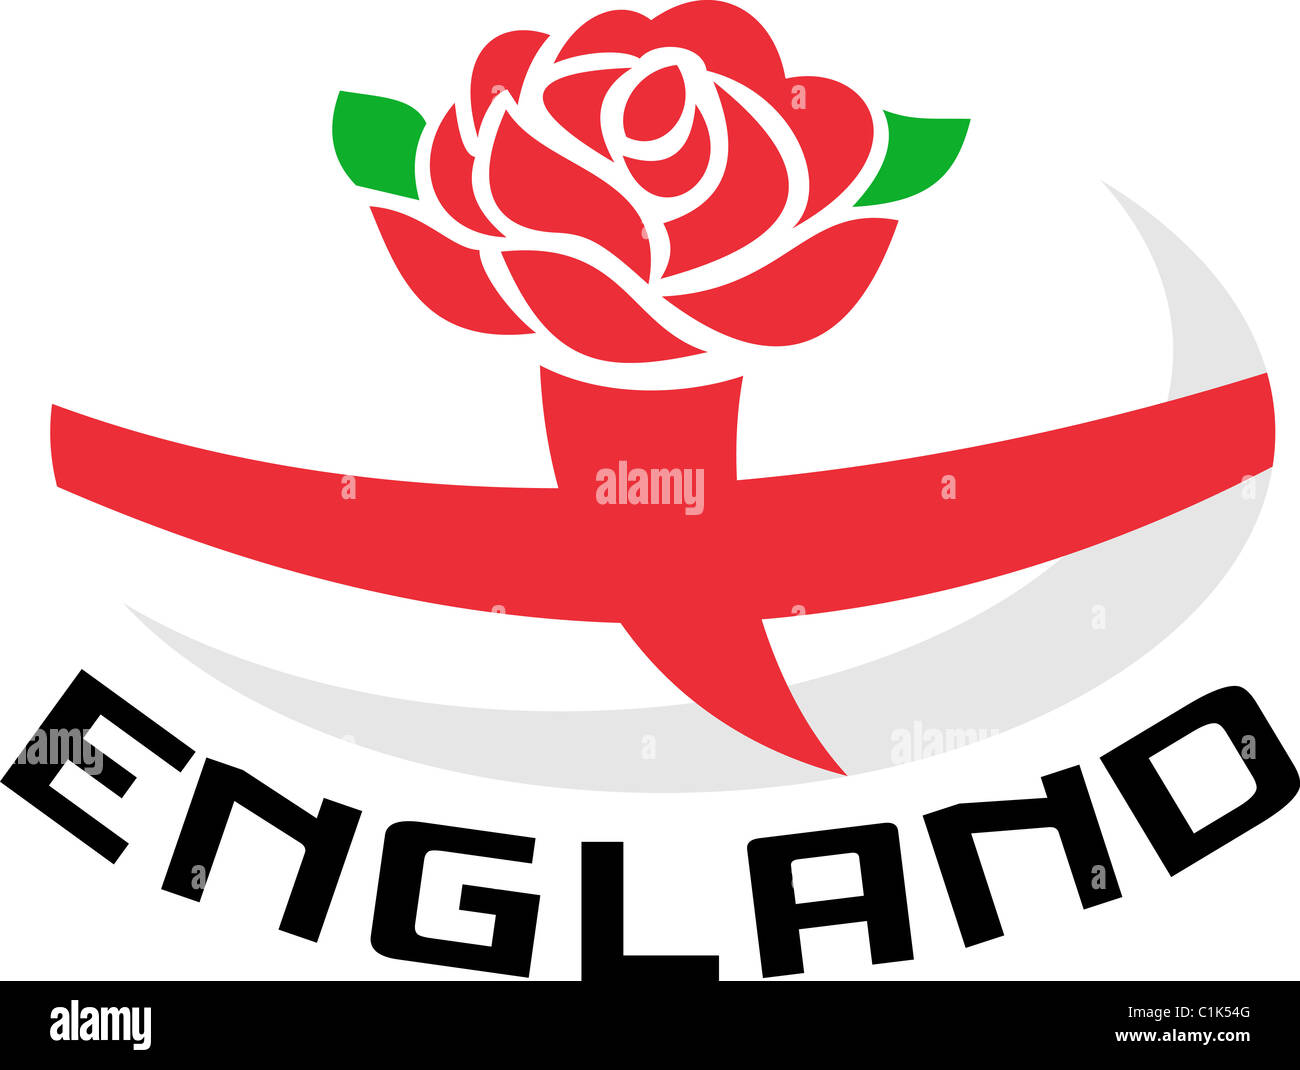 Abbildung von einem roten englischen rose mit Flagge von England innen Rugby-Ball und Worte "England" Stockfoto